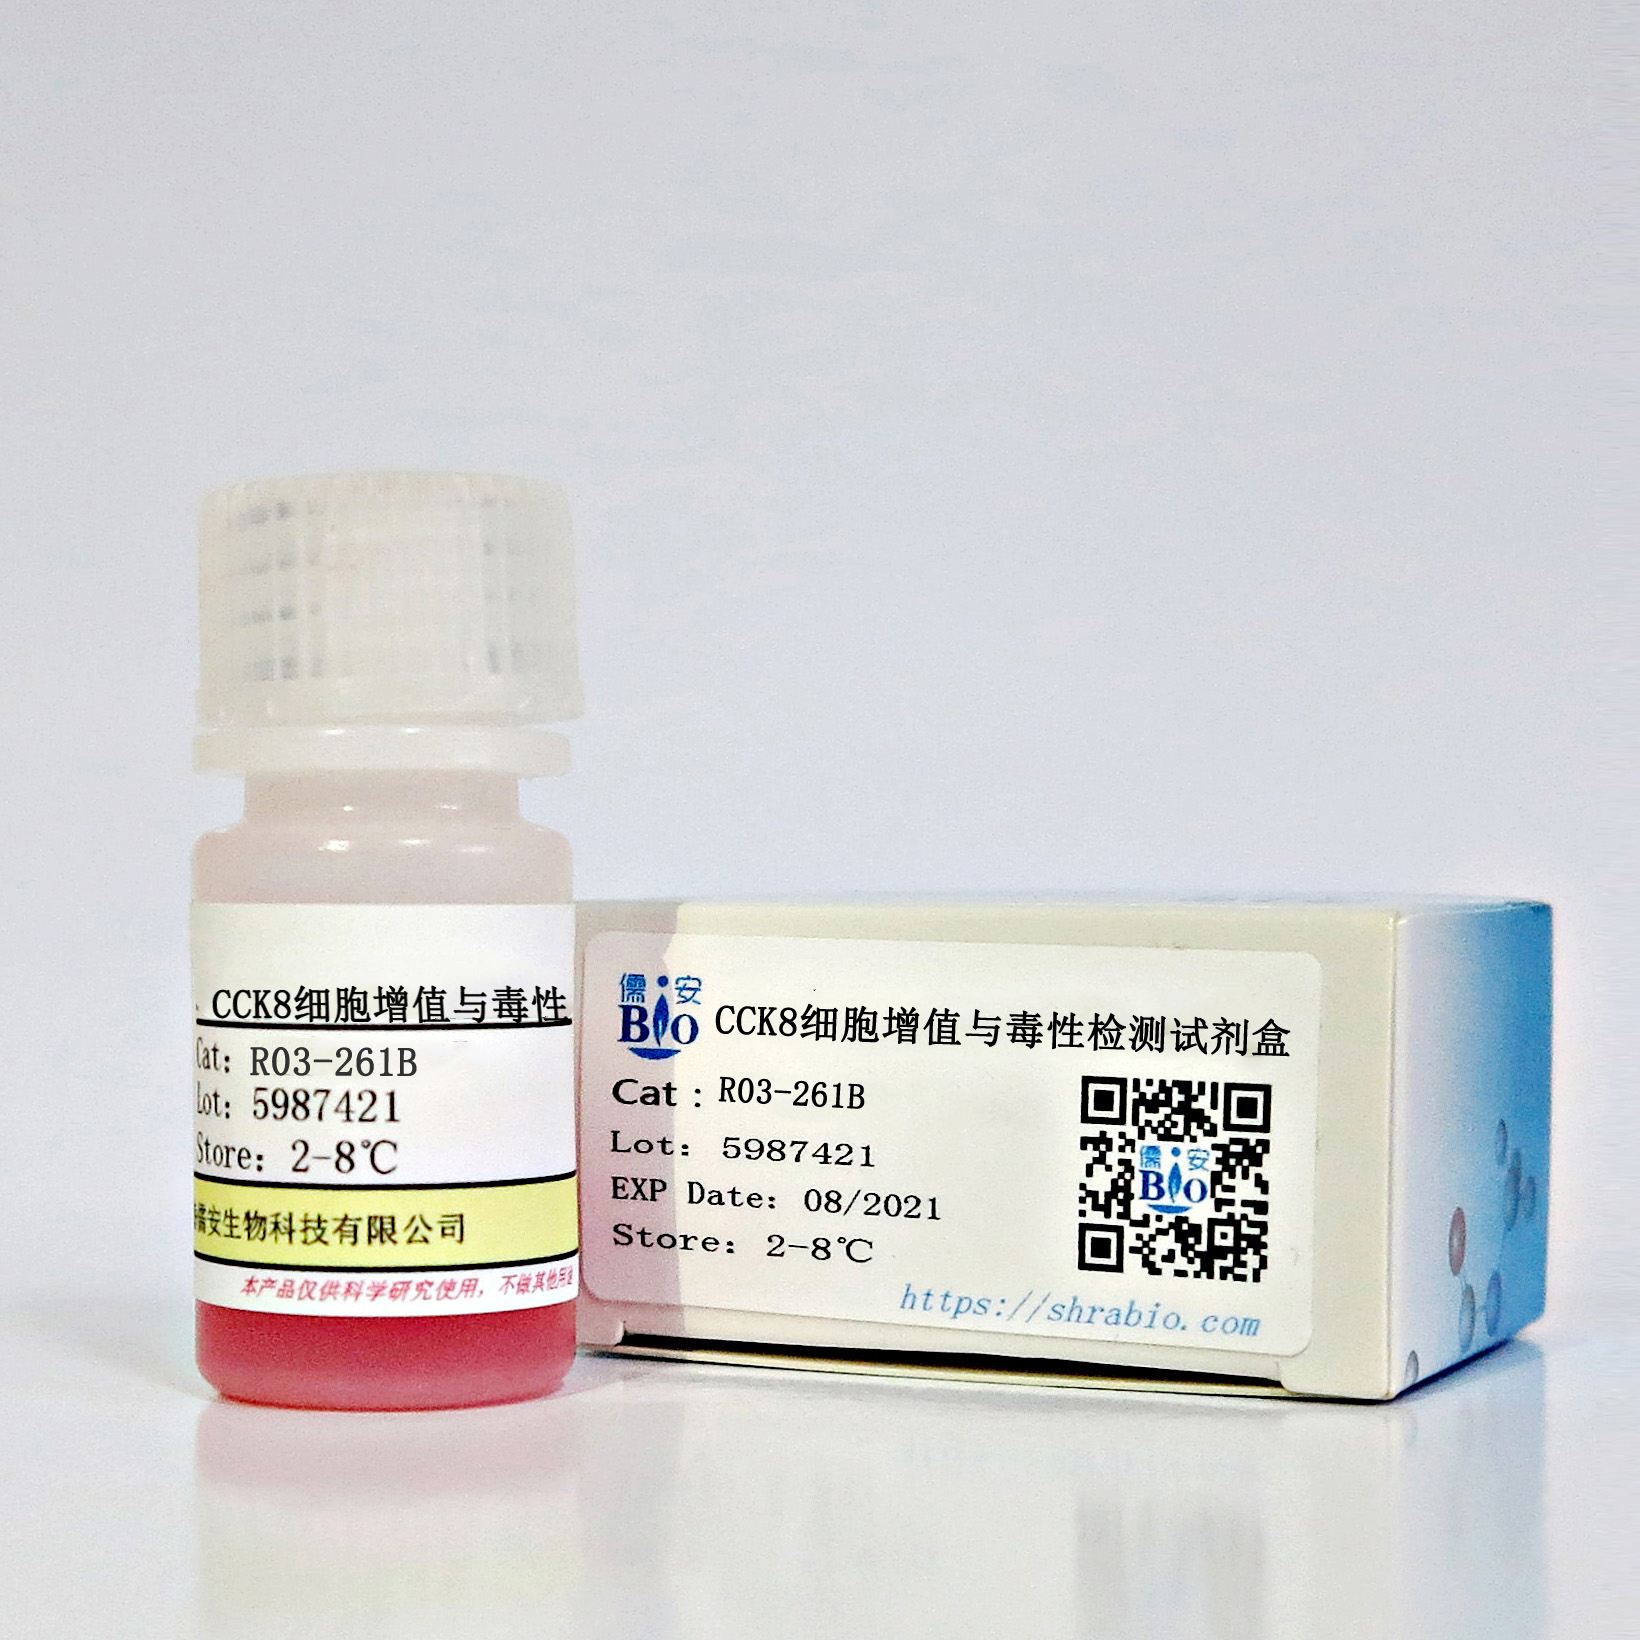 CCK8细胞增值与毒性检测试剂盒